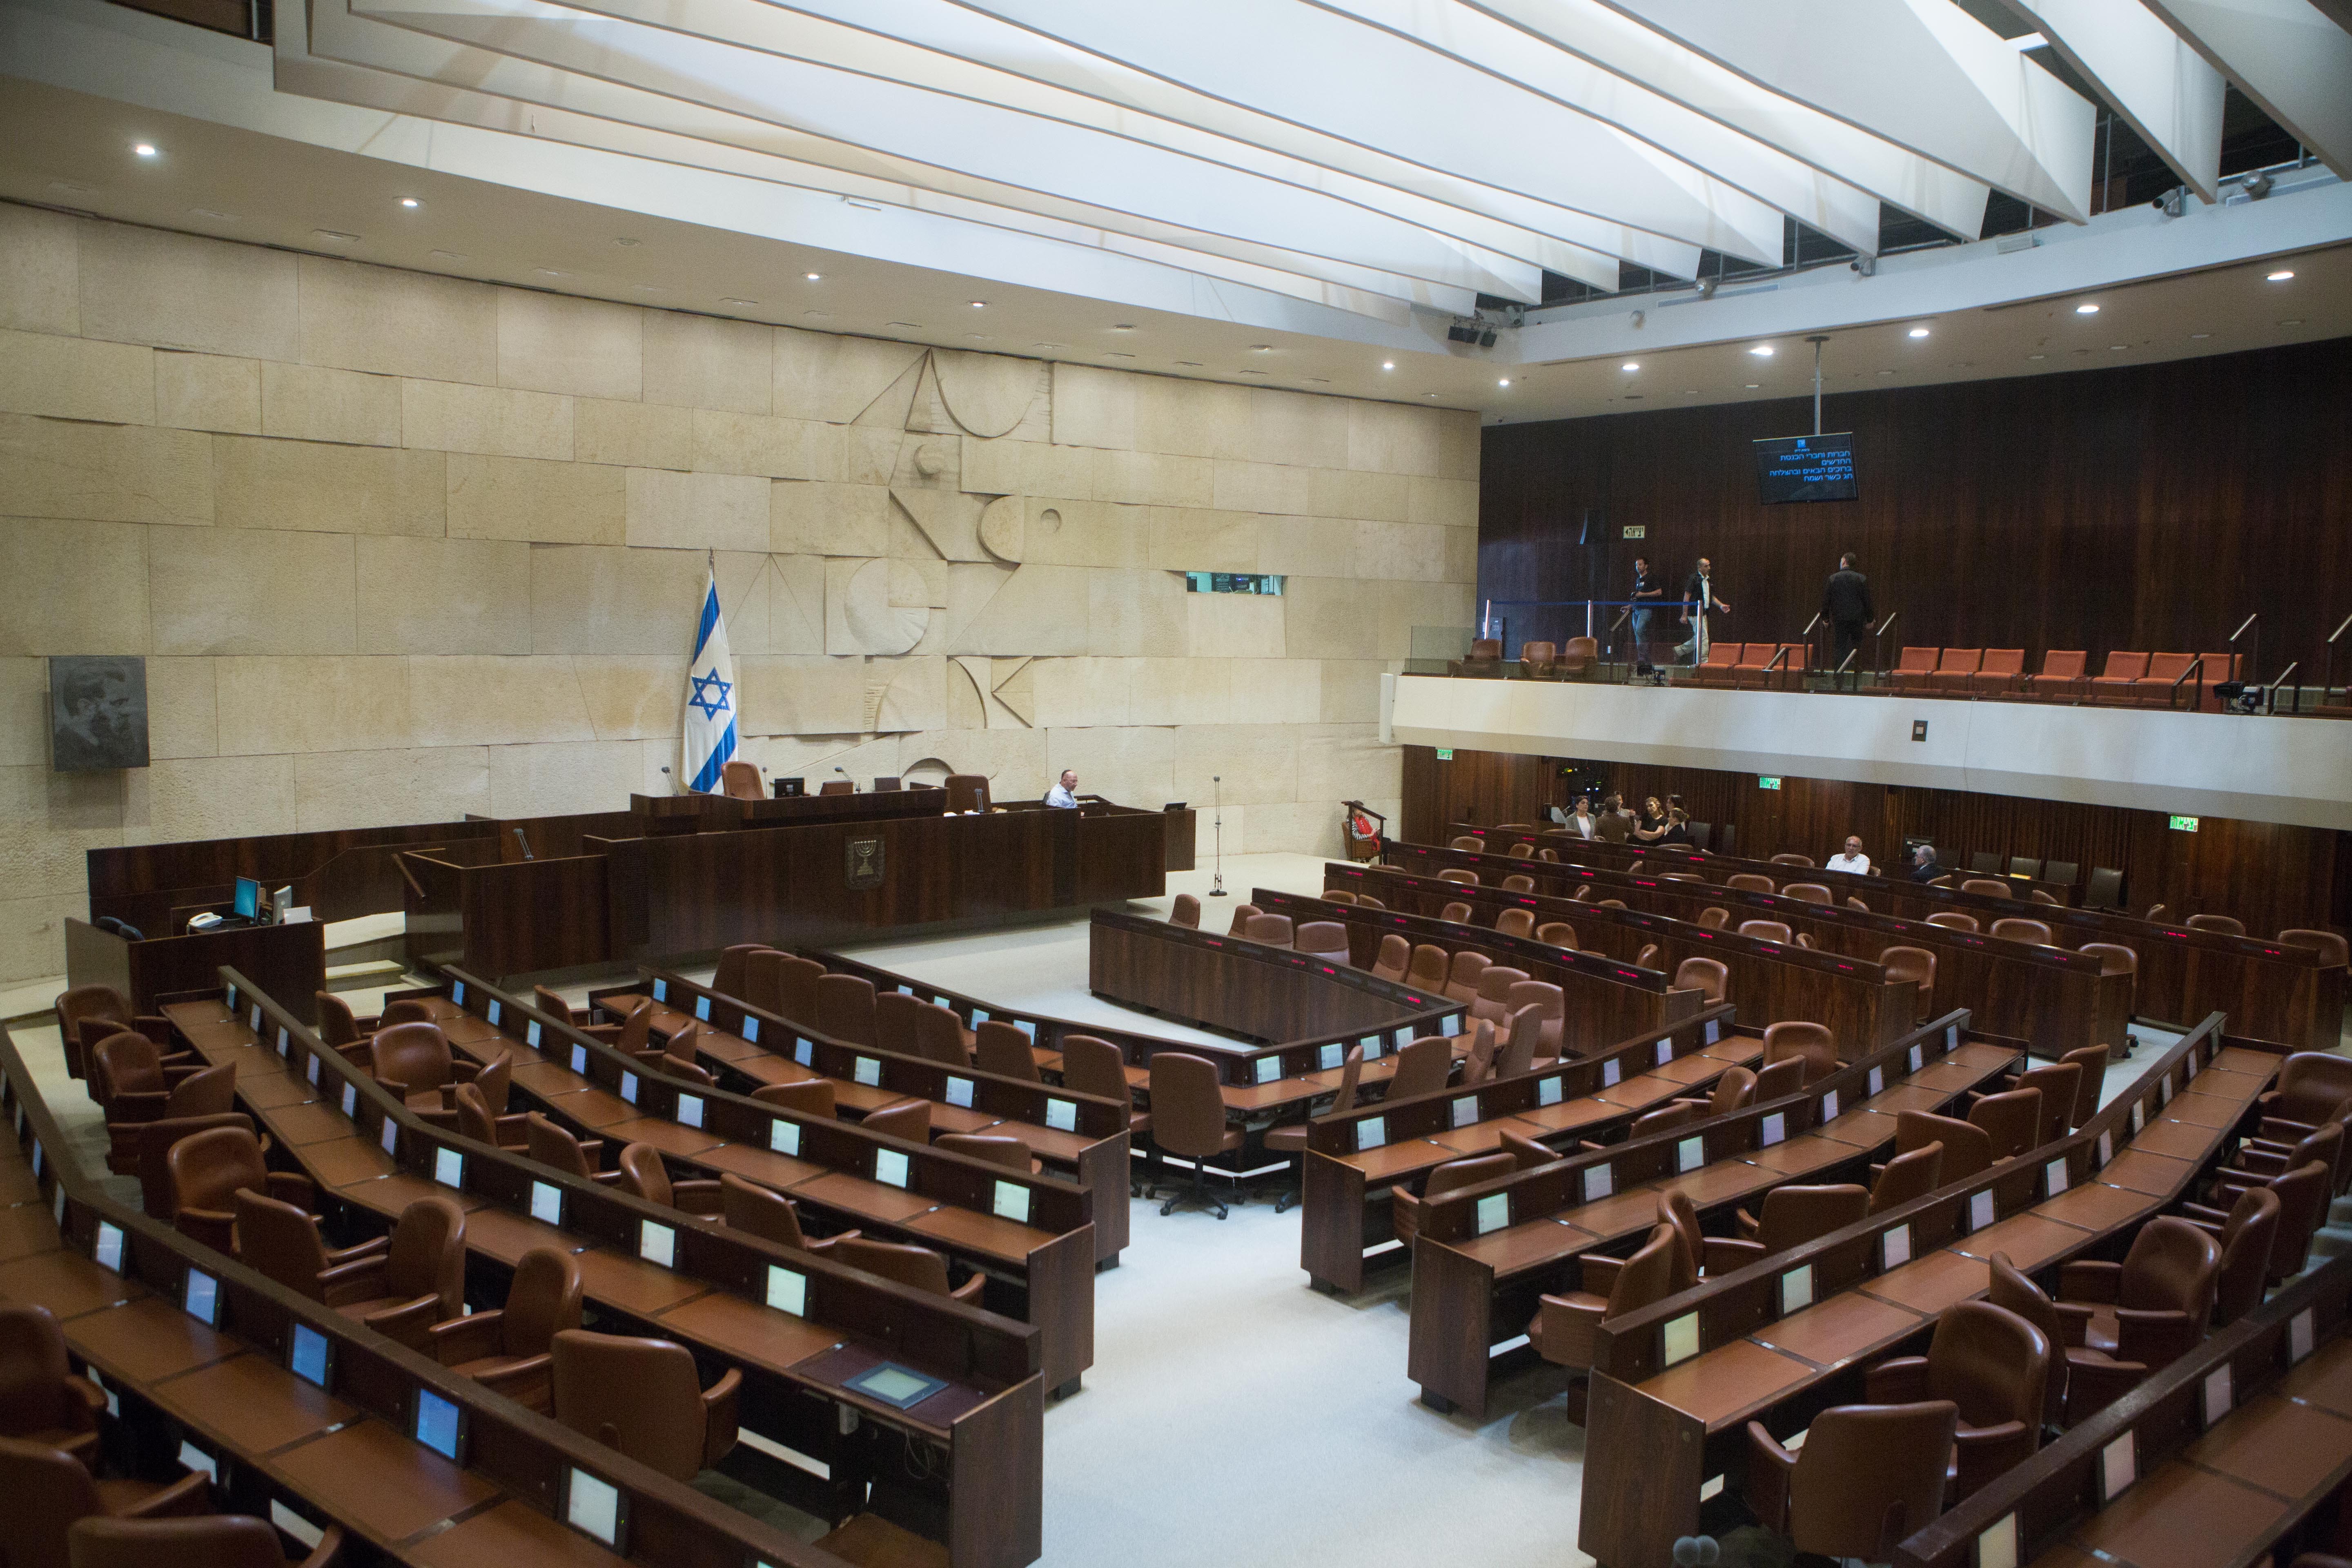 רק חיזוק הכנסת יבצר את הדמוקרטיה הישראלית